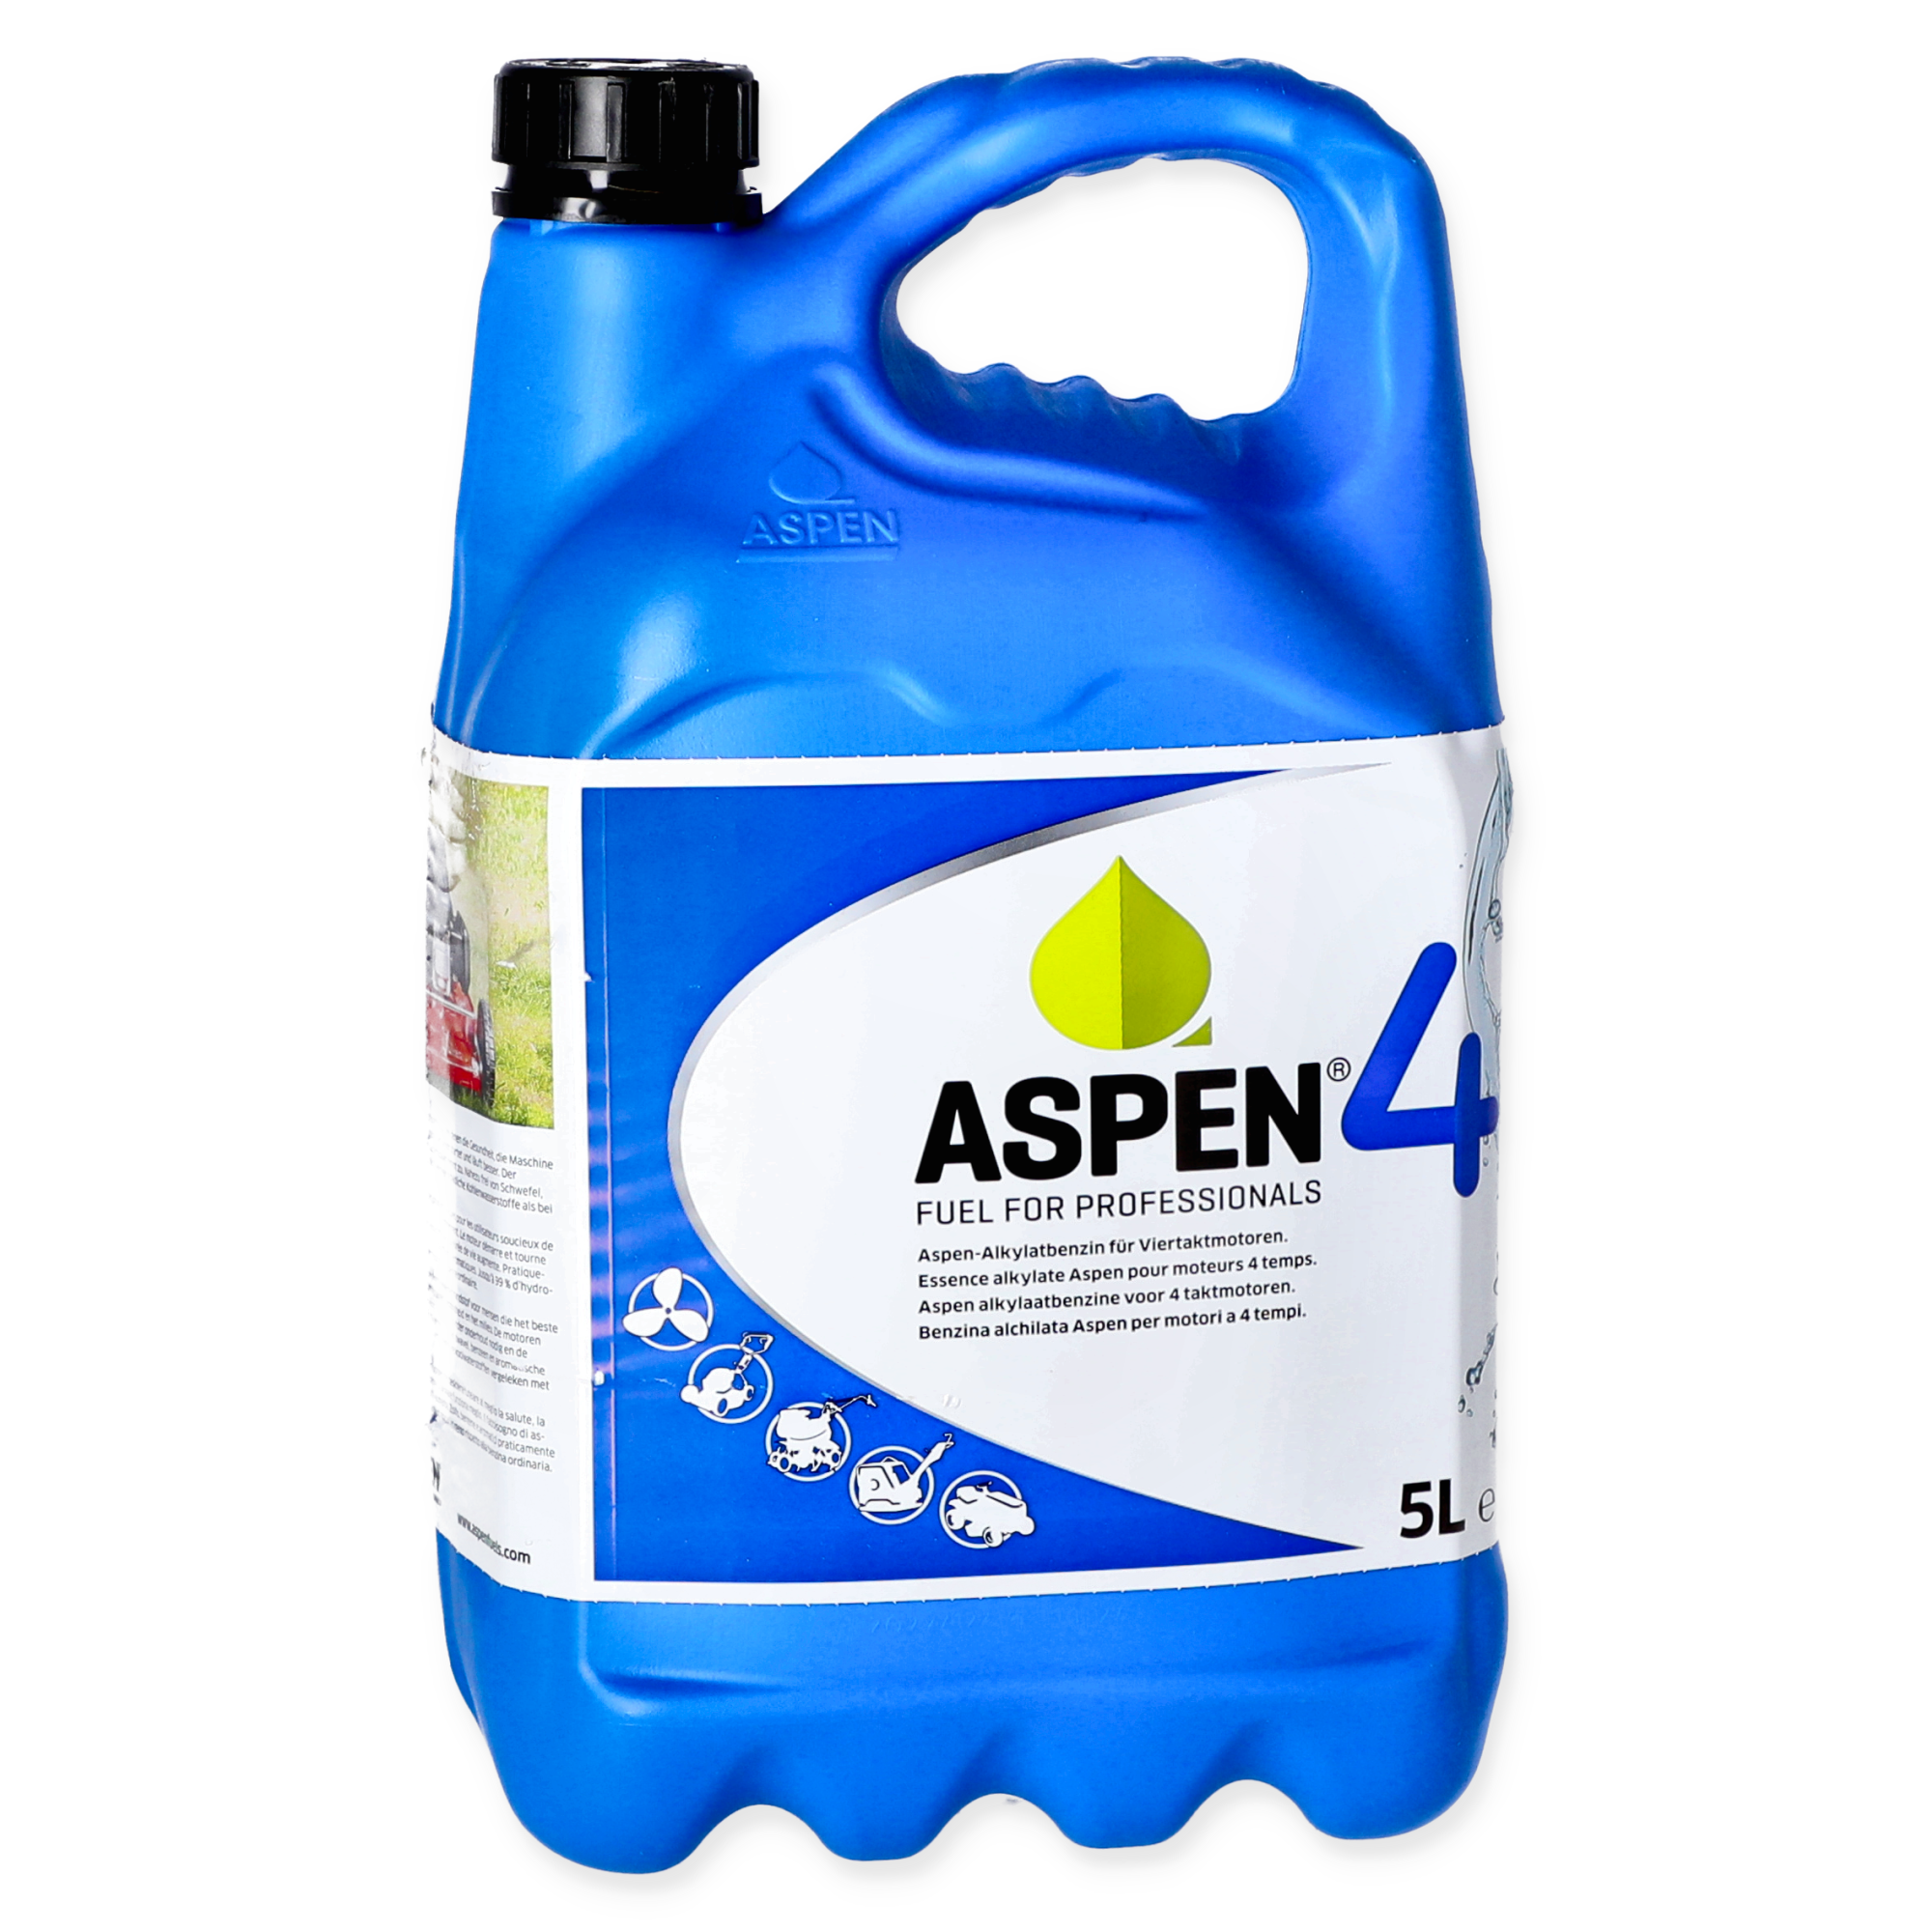 Alkylatbenzin 'Aspen 4' für 4-Takt-Motoren 5 l